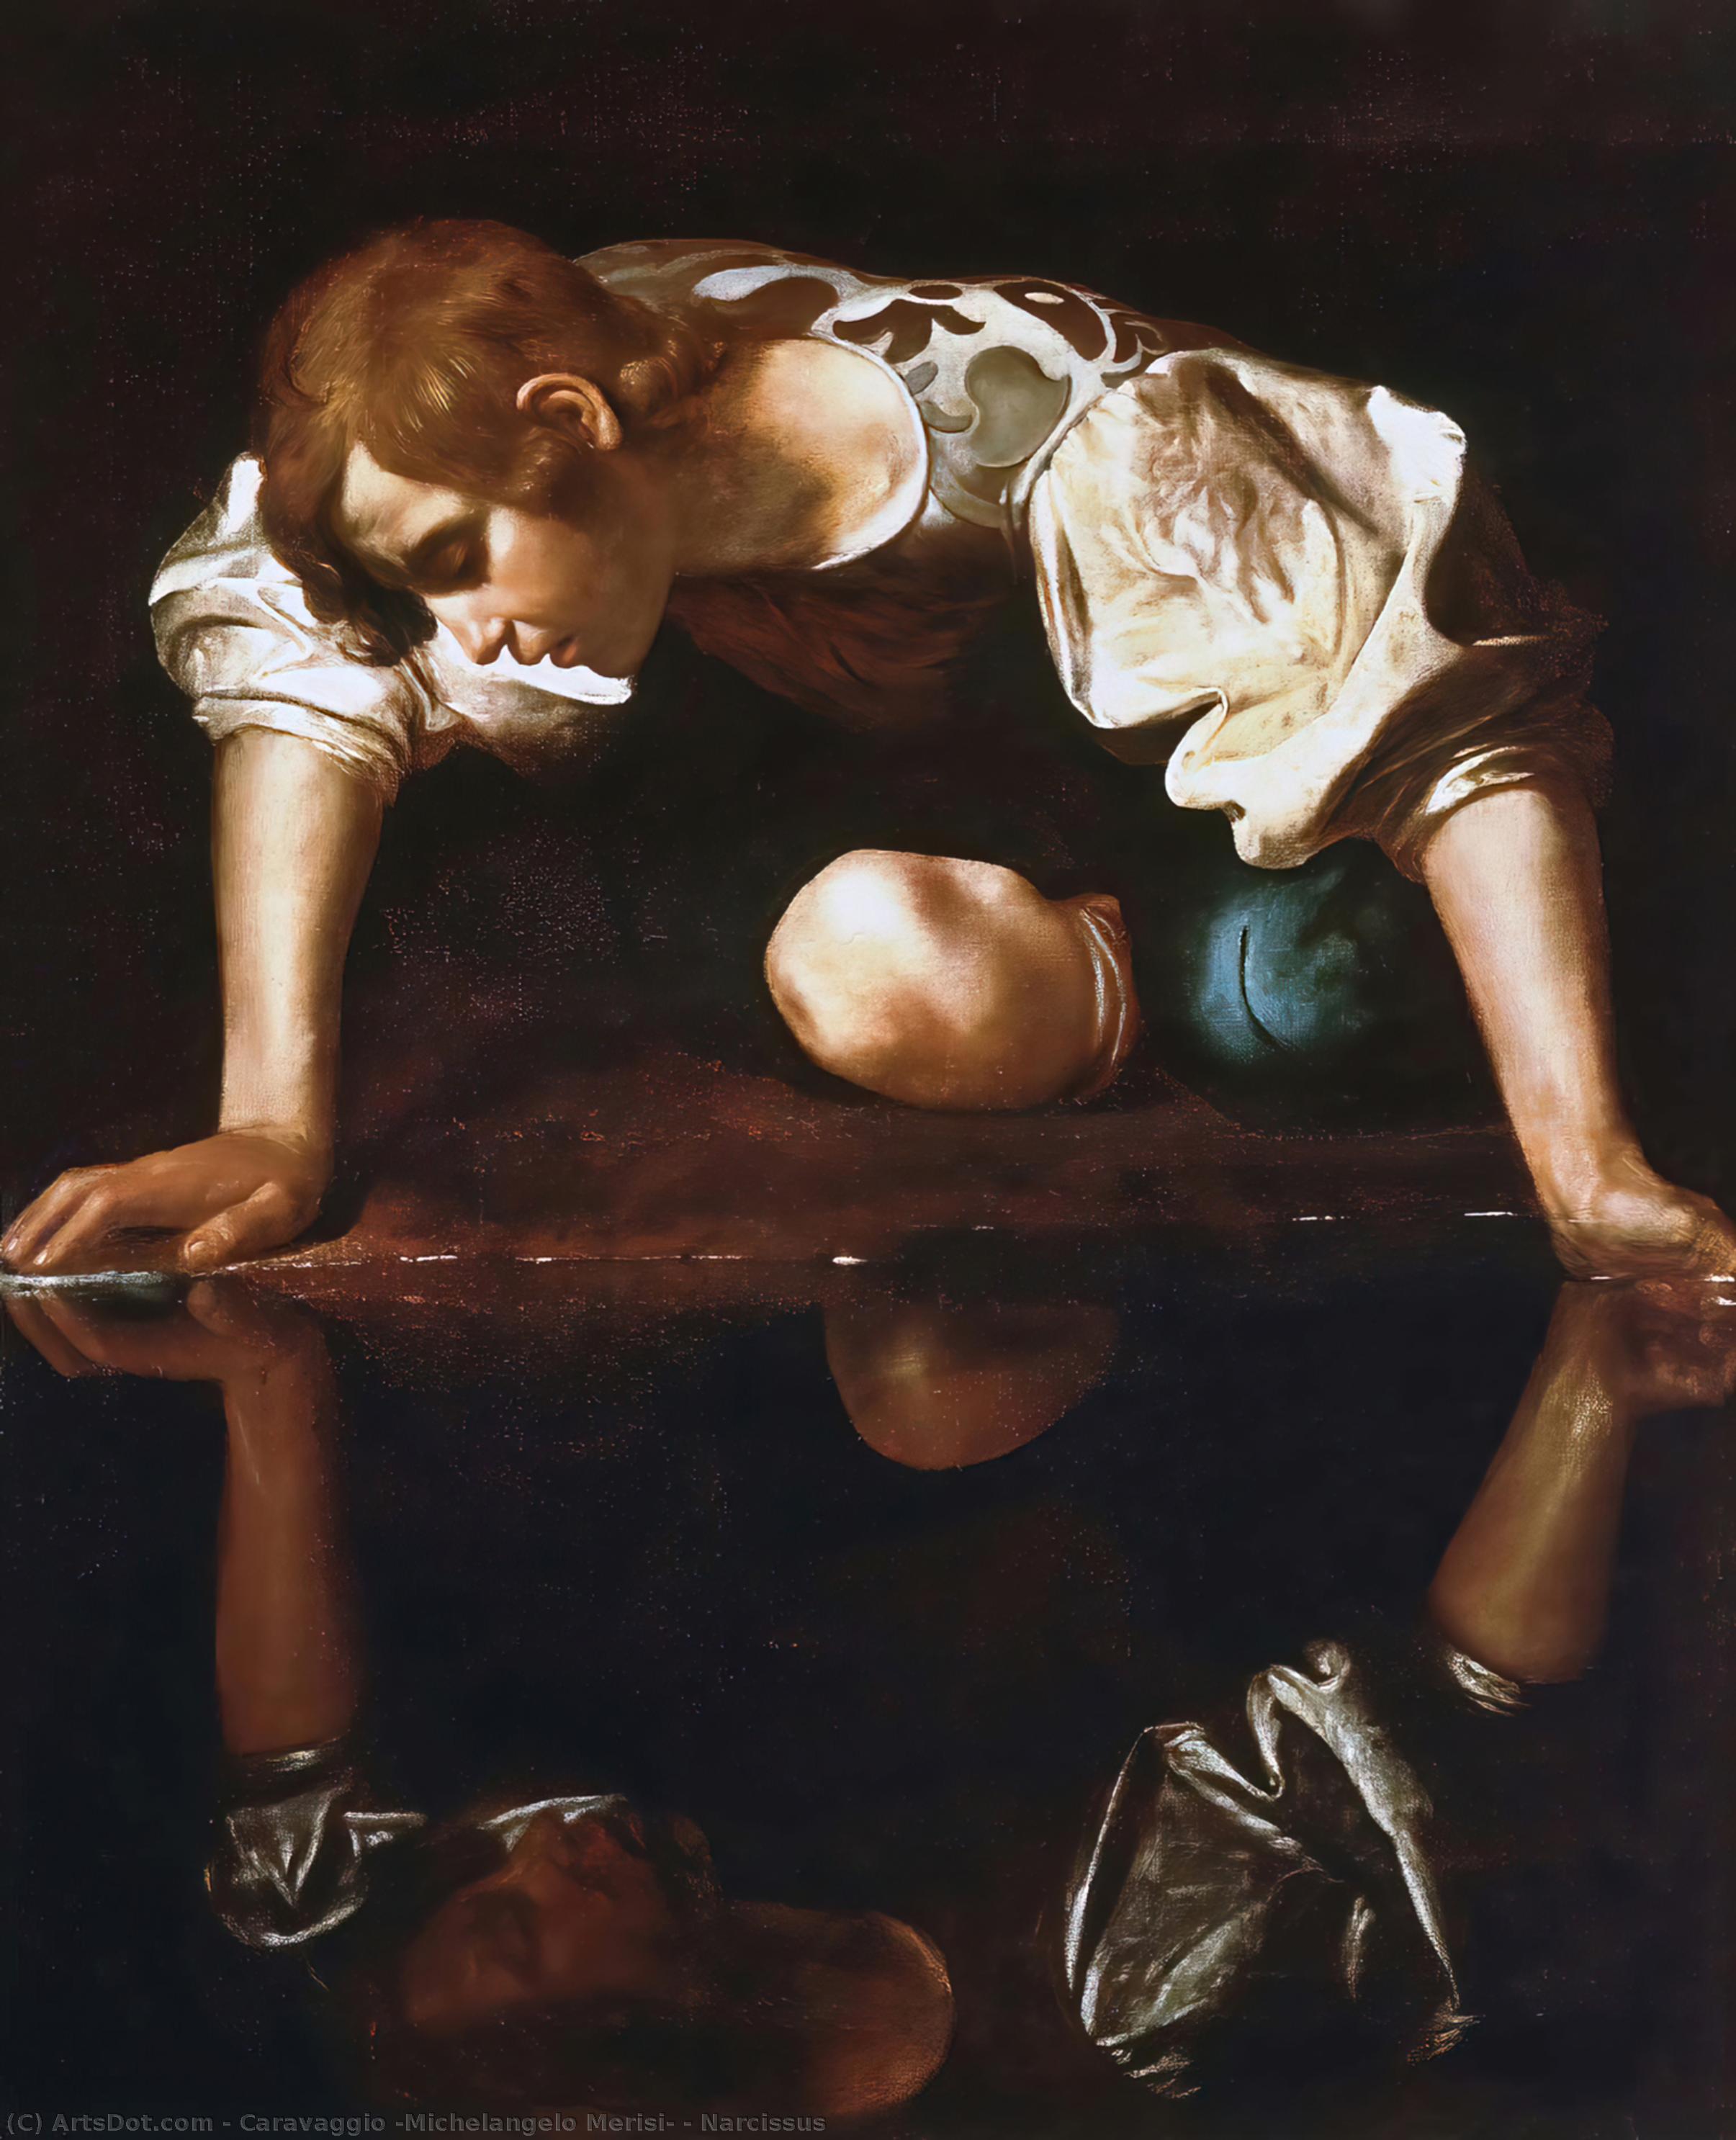 Narcissus - Caravaggio (Michelangelo Merisi)